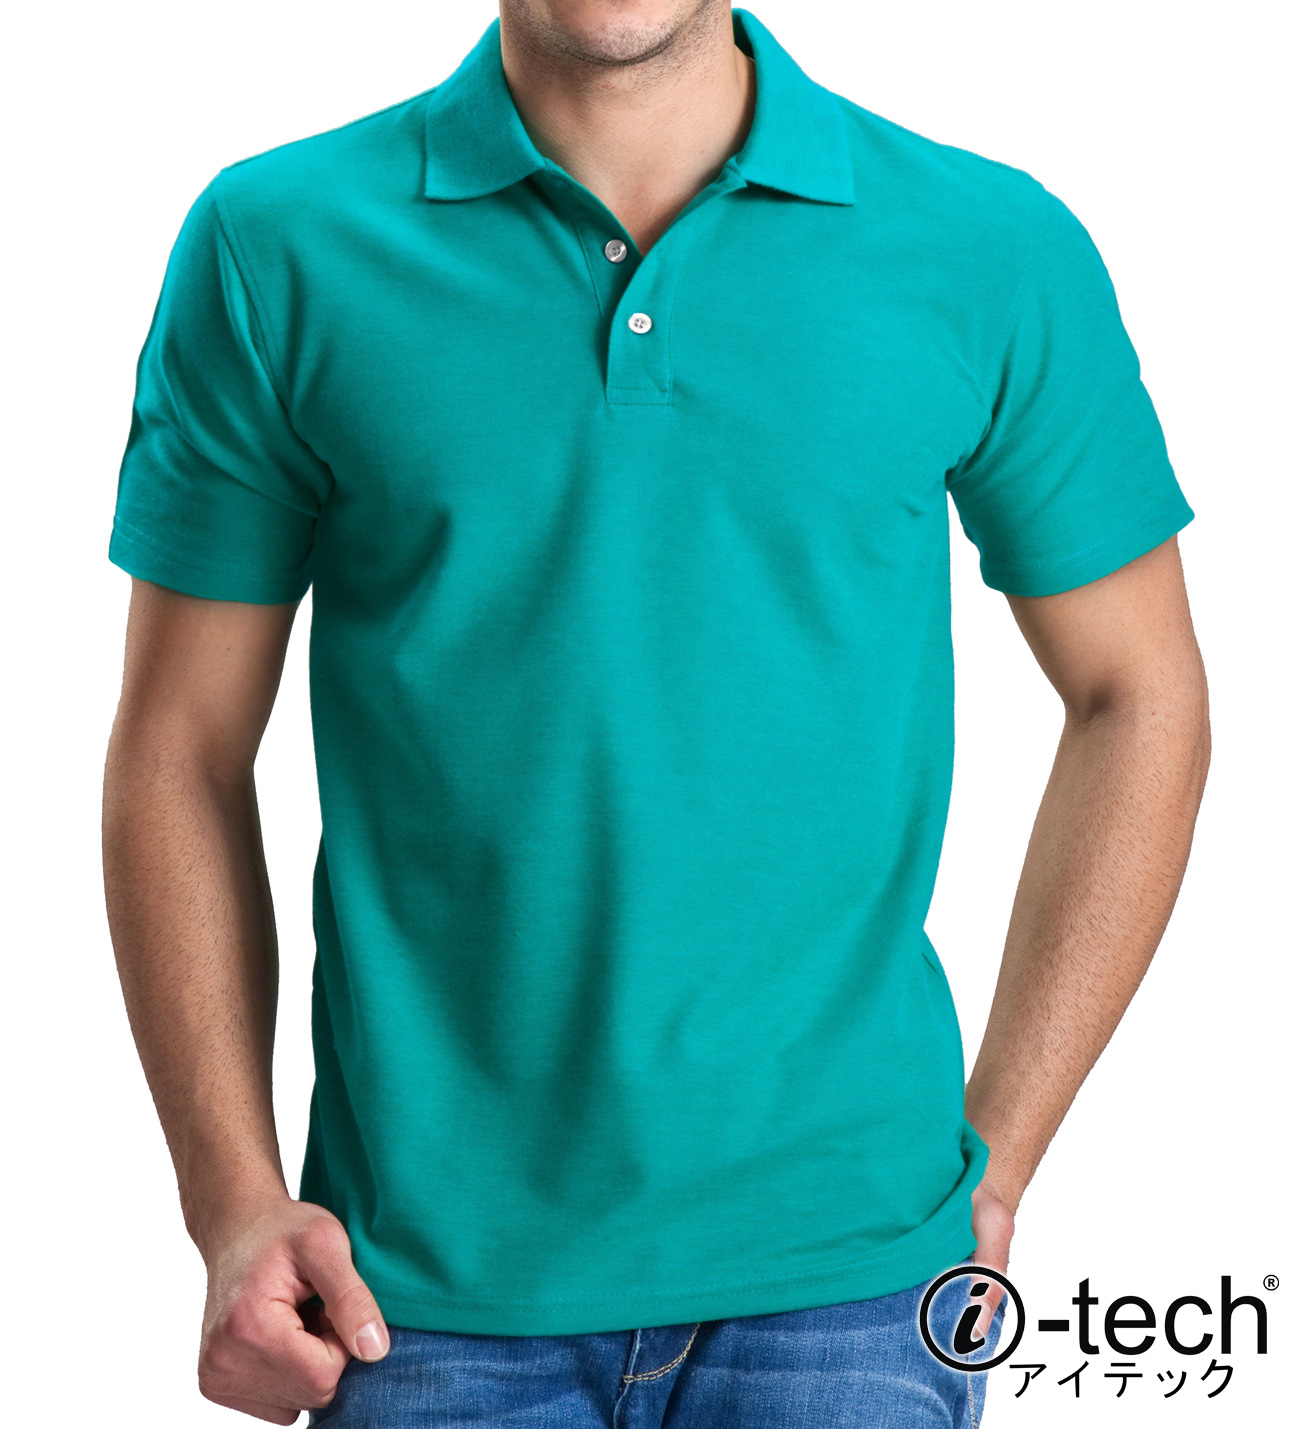 teal color polo shirt